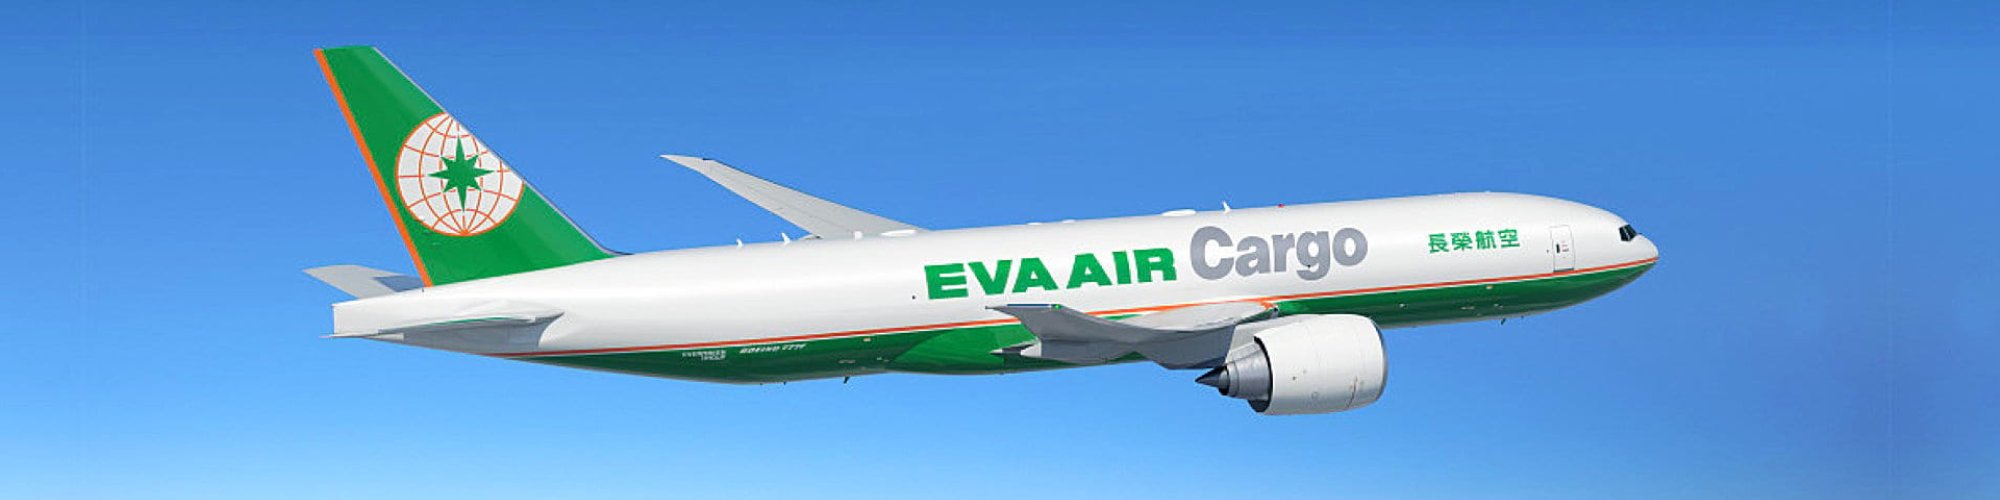 eva air cargo